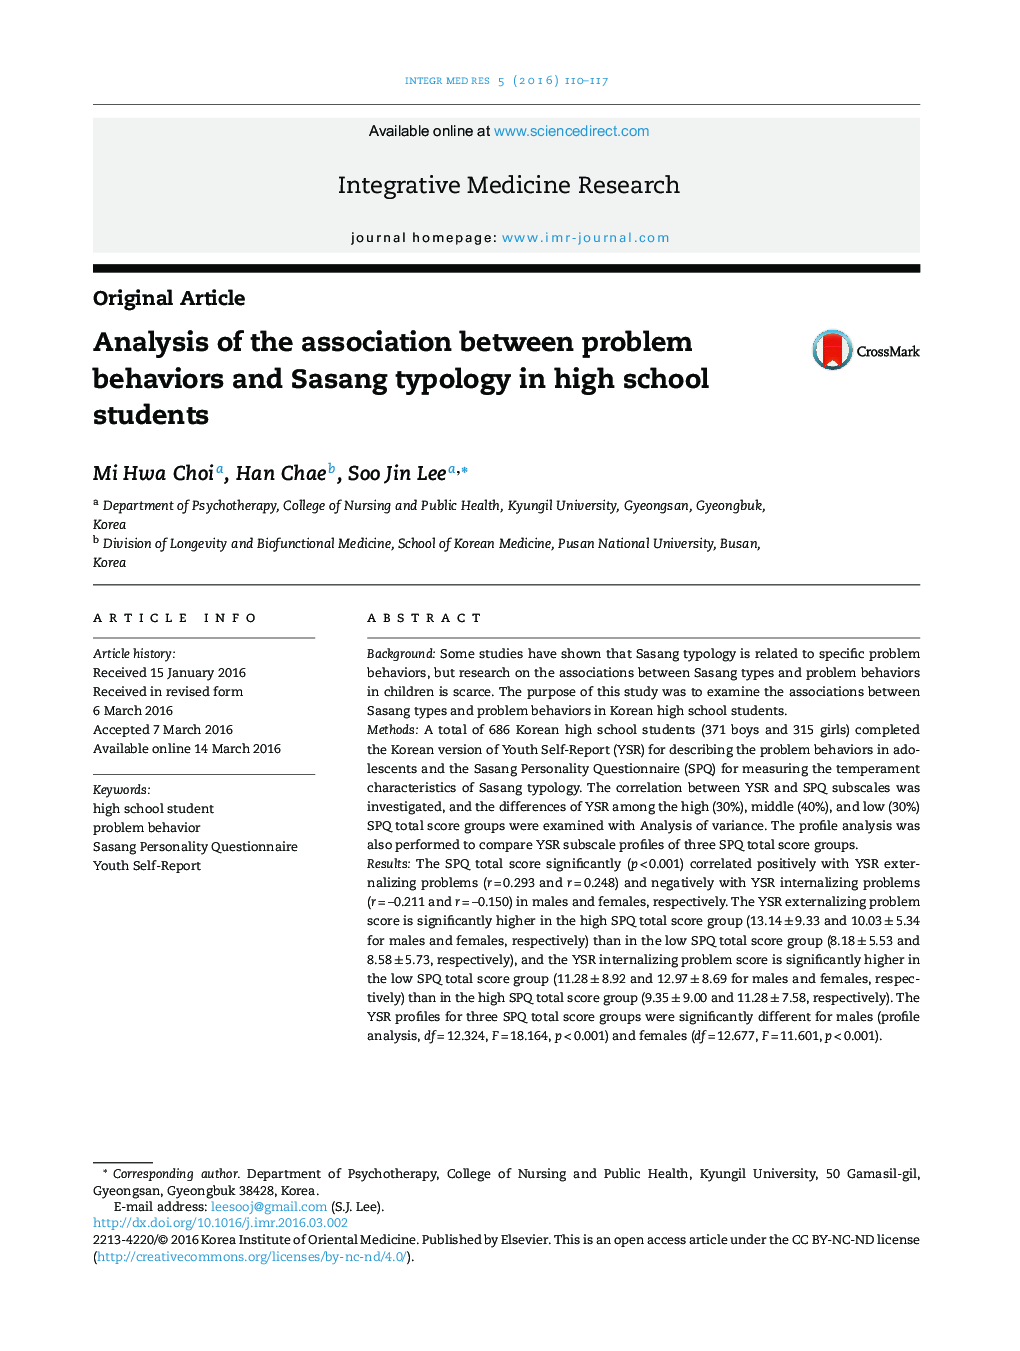 تجزیه و تحلیل ارتباط بین رفتارهای مشکل و نوع شناسی ساسانگ در دانش آموزان دبیرستانی